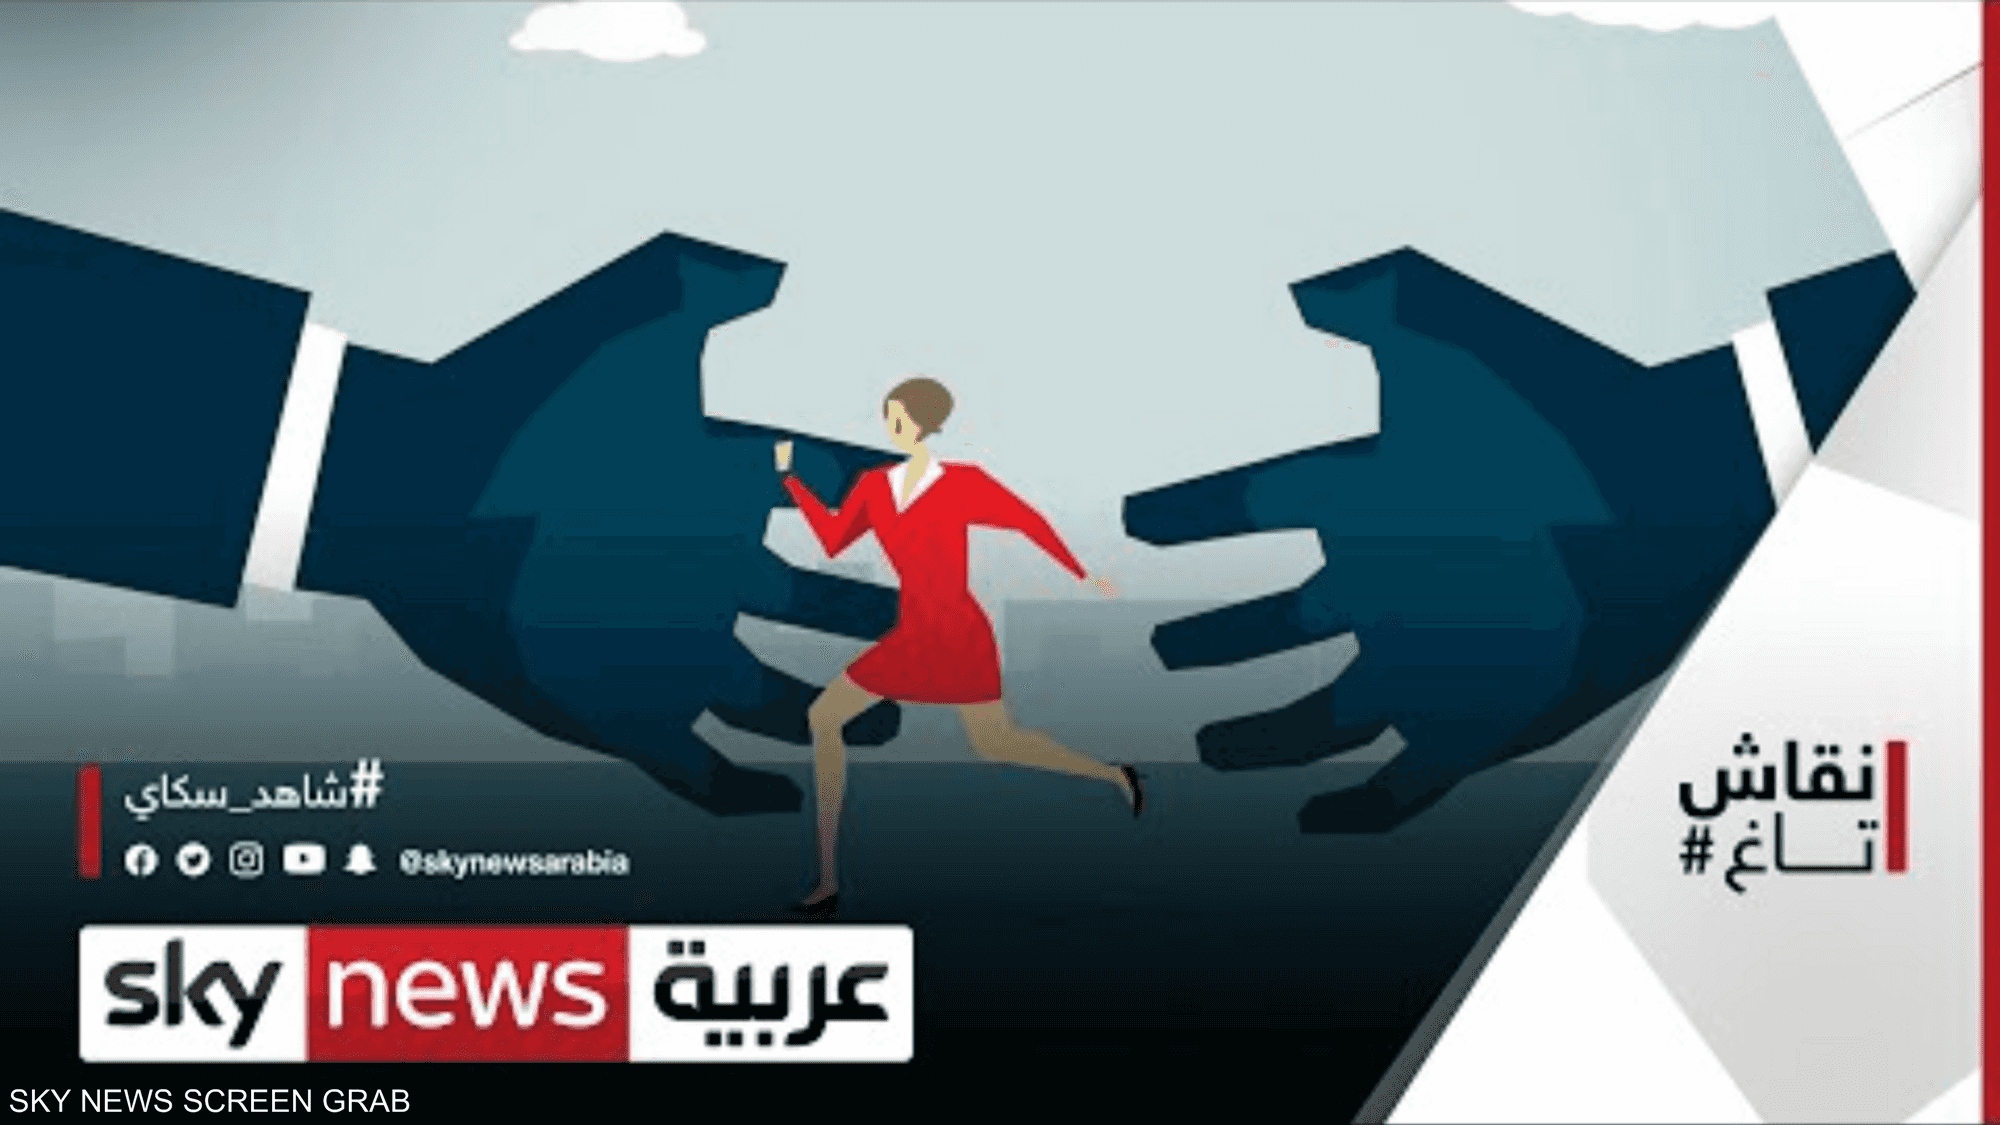 ظاهرة التحرش تعود للواجهة.. والجامعات المغربية تحت المجهر